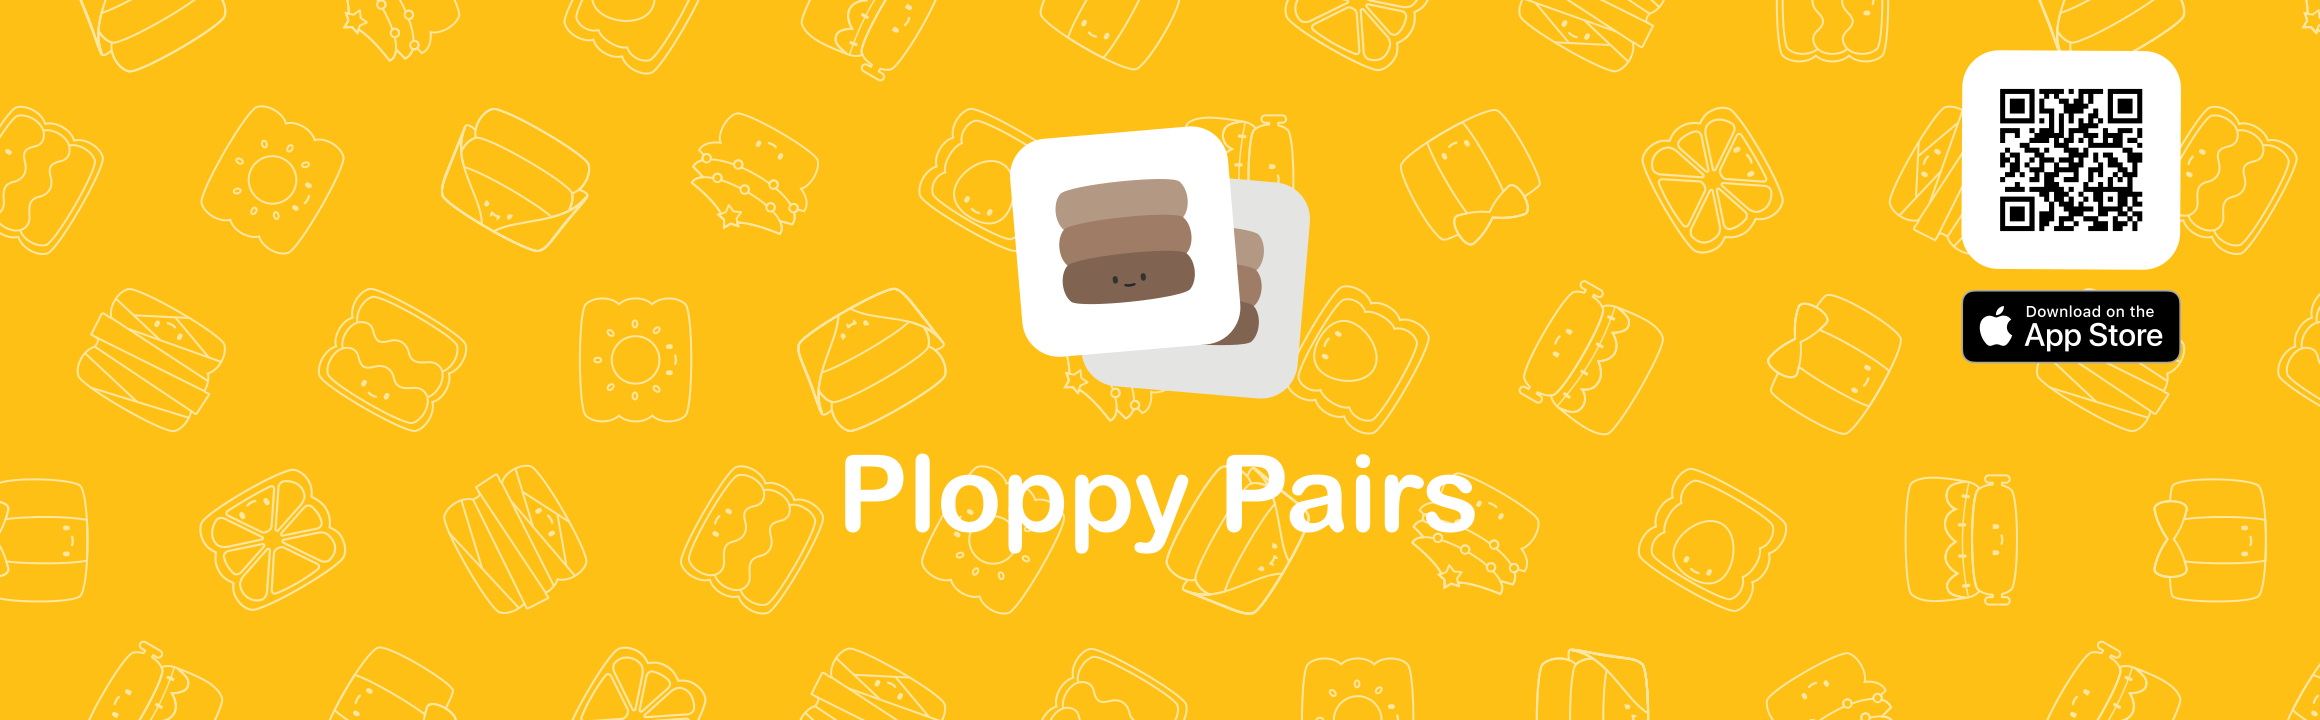 Ploppy Pairs